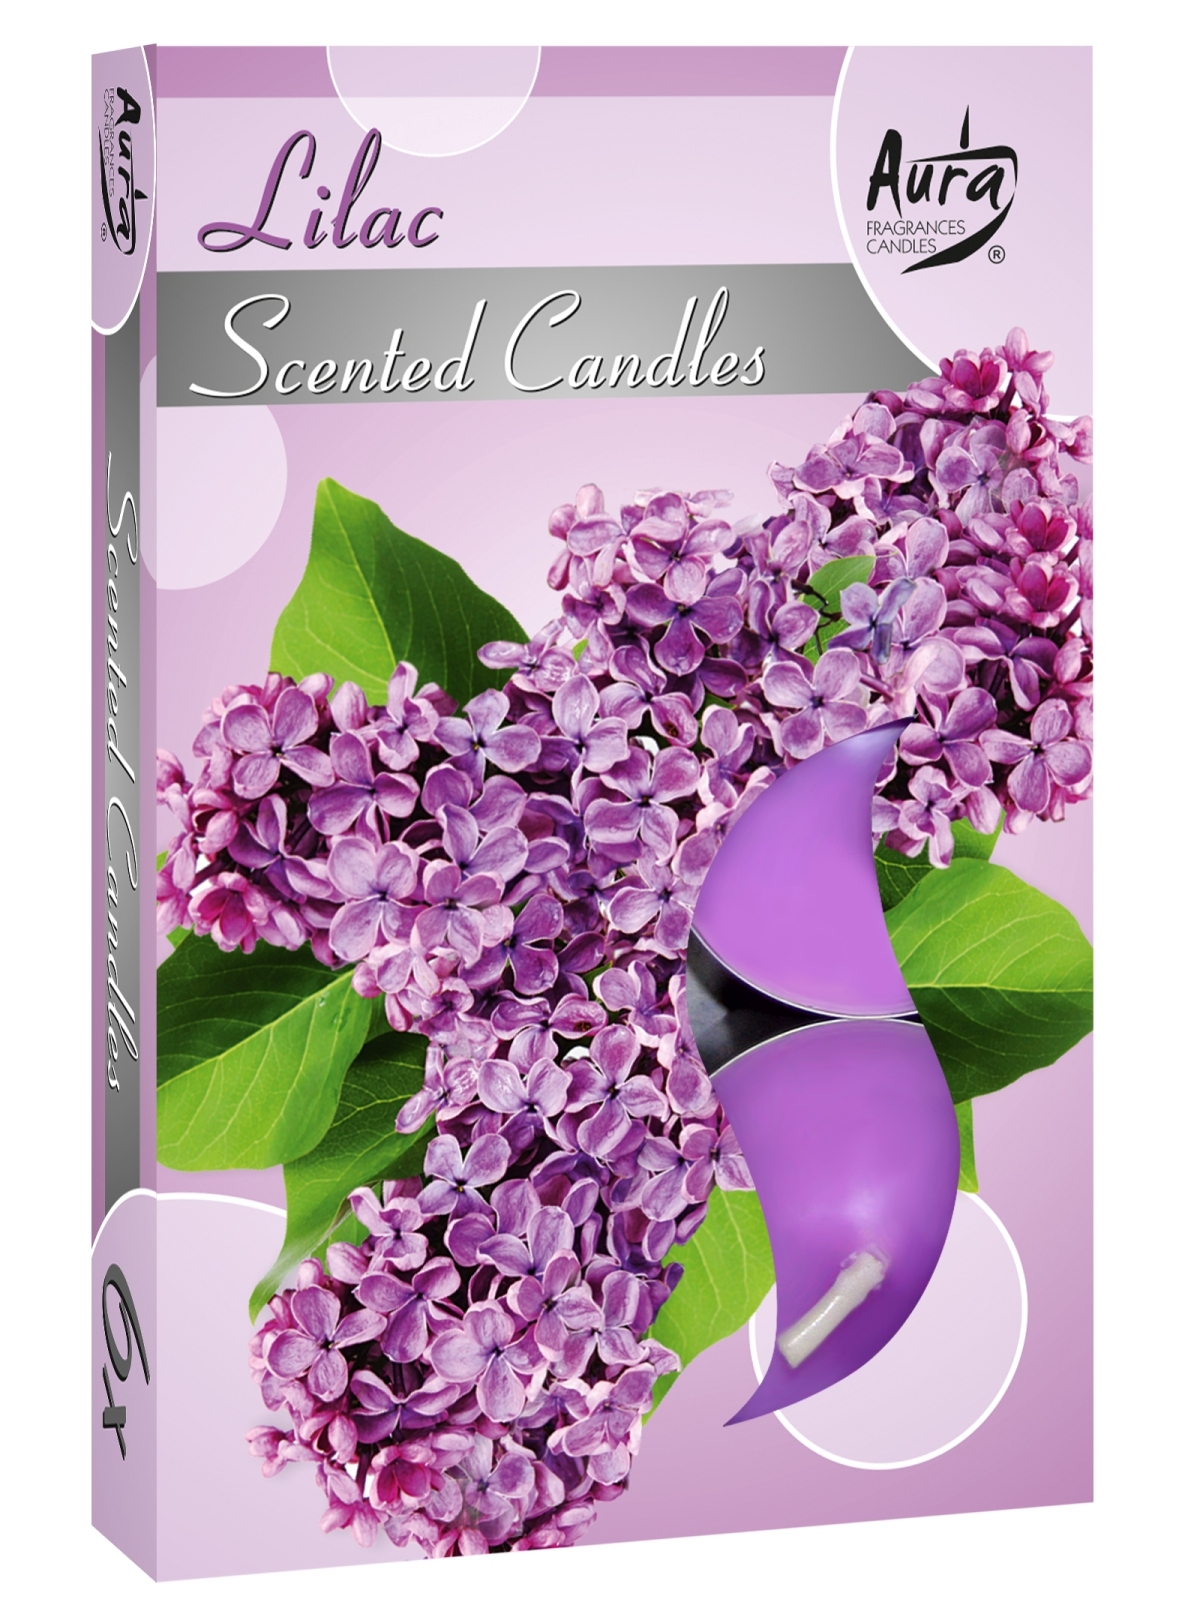 Bispol, Lilac, podgrzewacze zapachowe, 6 sztuk